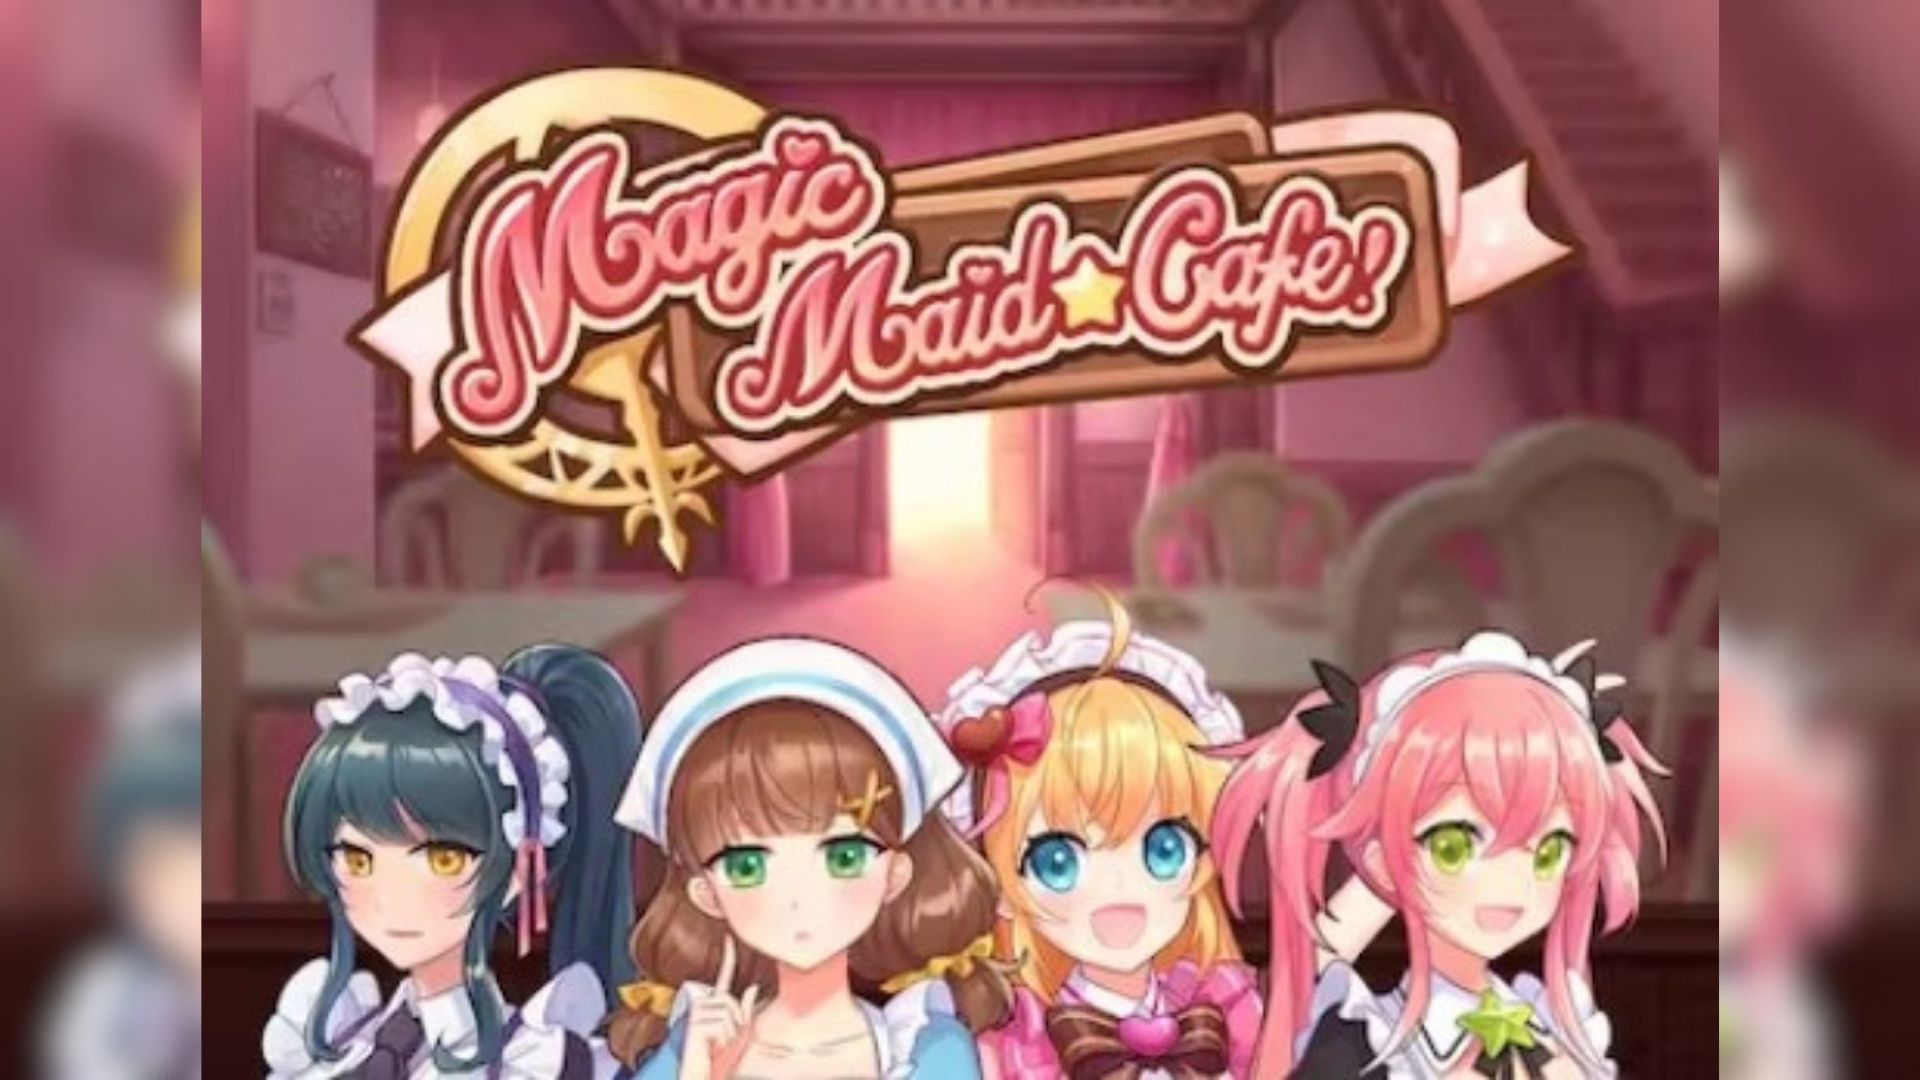 magic maid cafe gacor